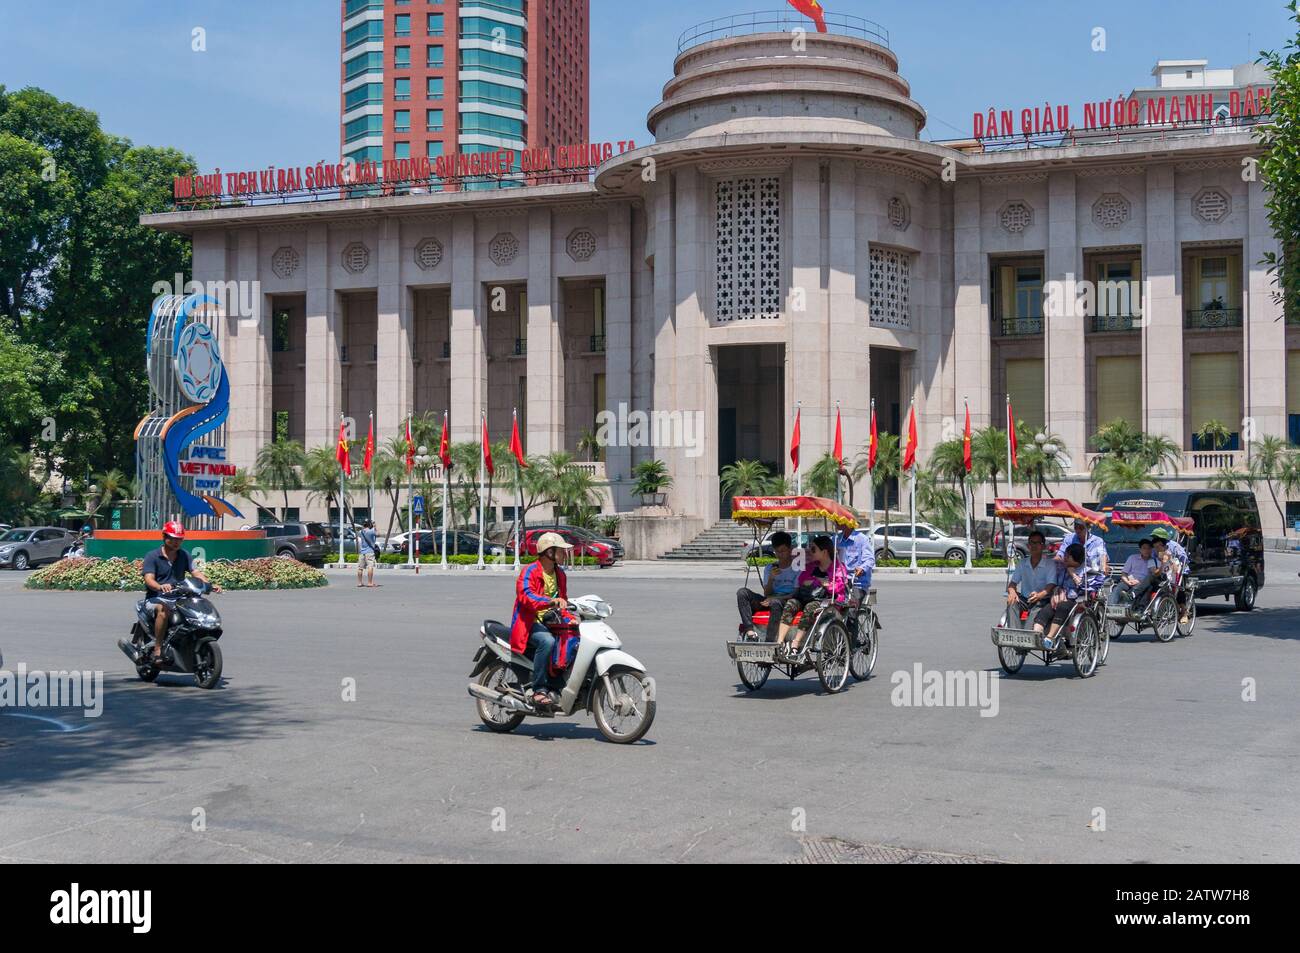 Hanoï, Vietnam - 22 août 2017 : trafic de scooters devant la Banque d'État du Vietnam avec bannière de l'APEC devant le bâtiment de Hanoi Banque D'Images